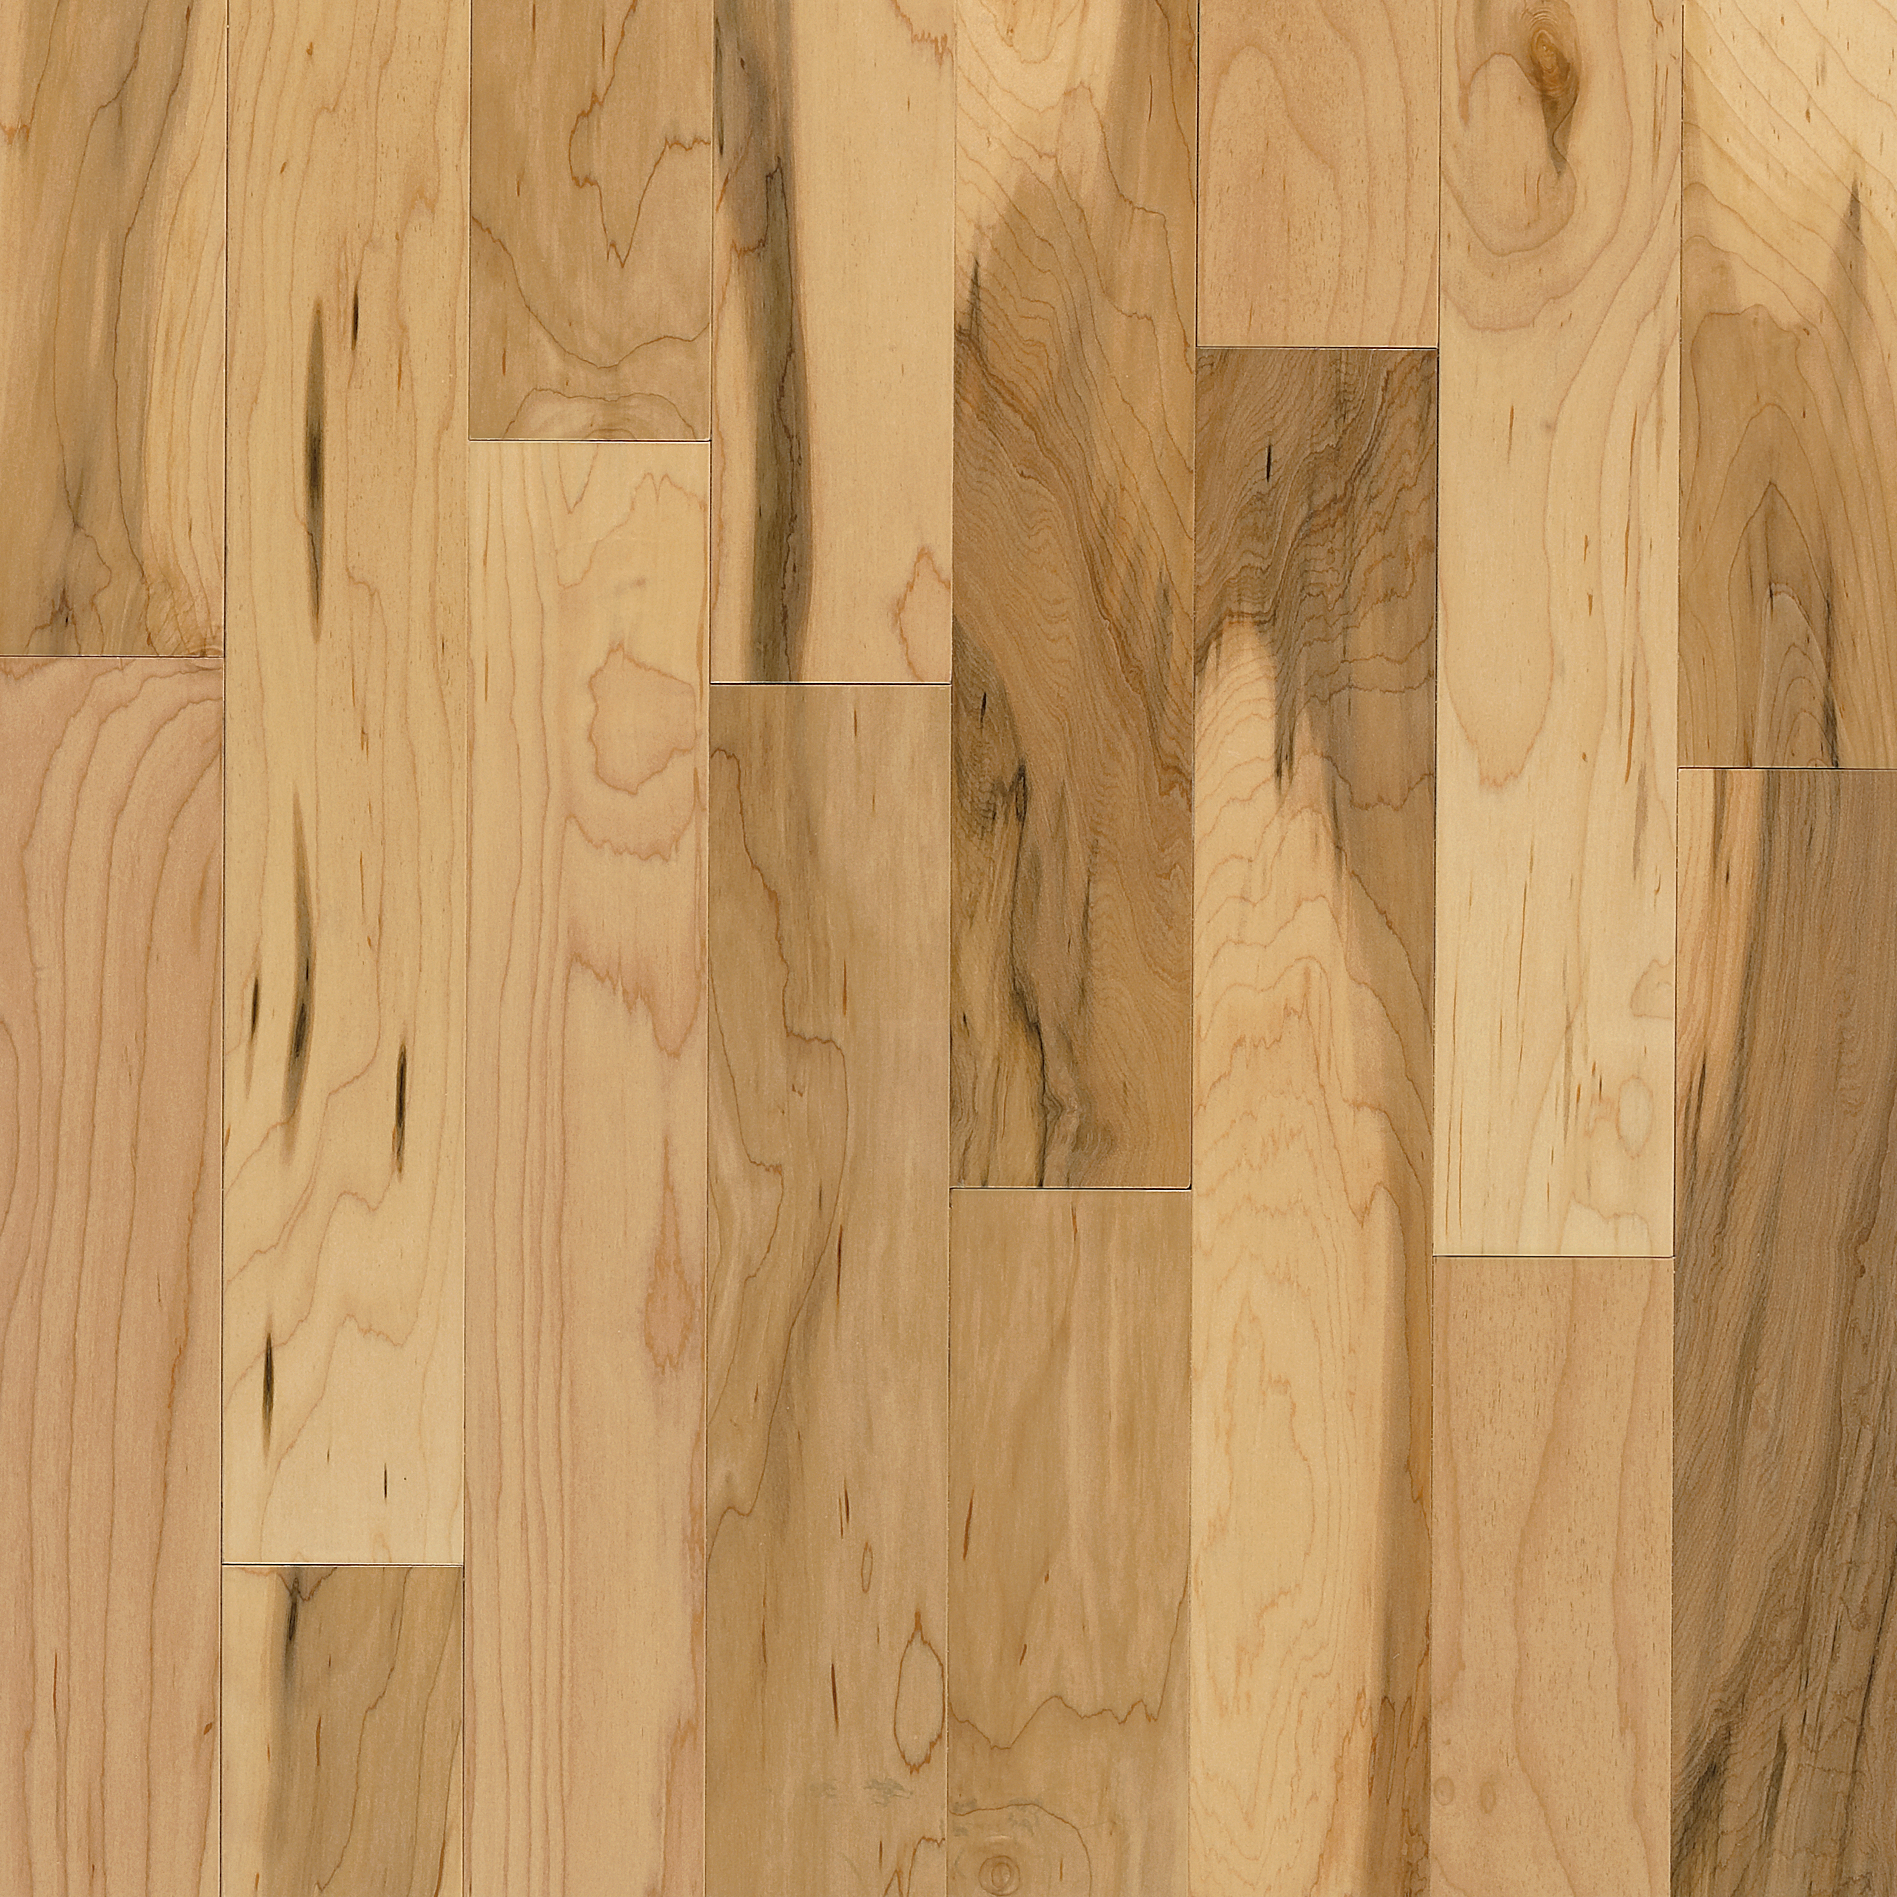 Maple Solid Hardwood Ahs4010, 3 1 4 Maple Hardwood Flooring